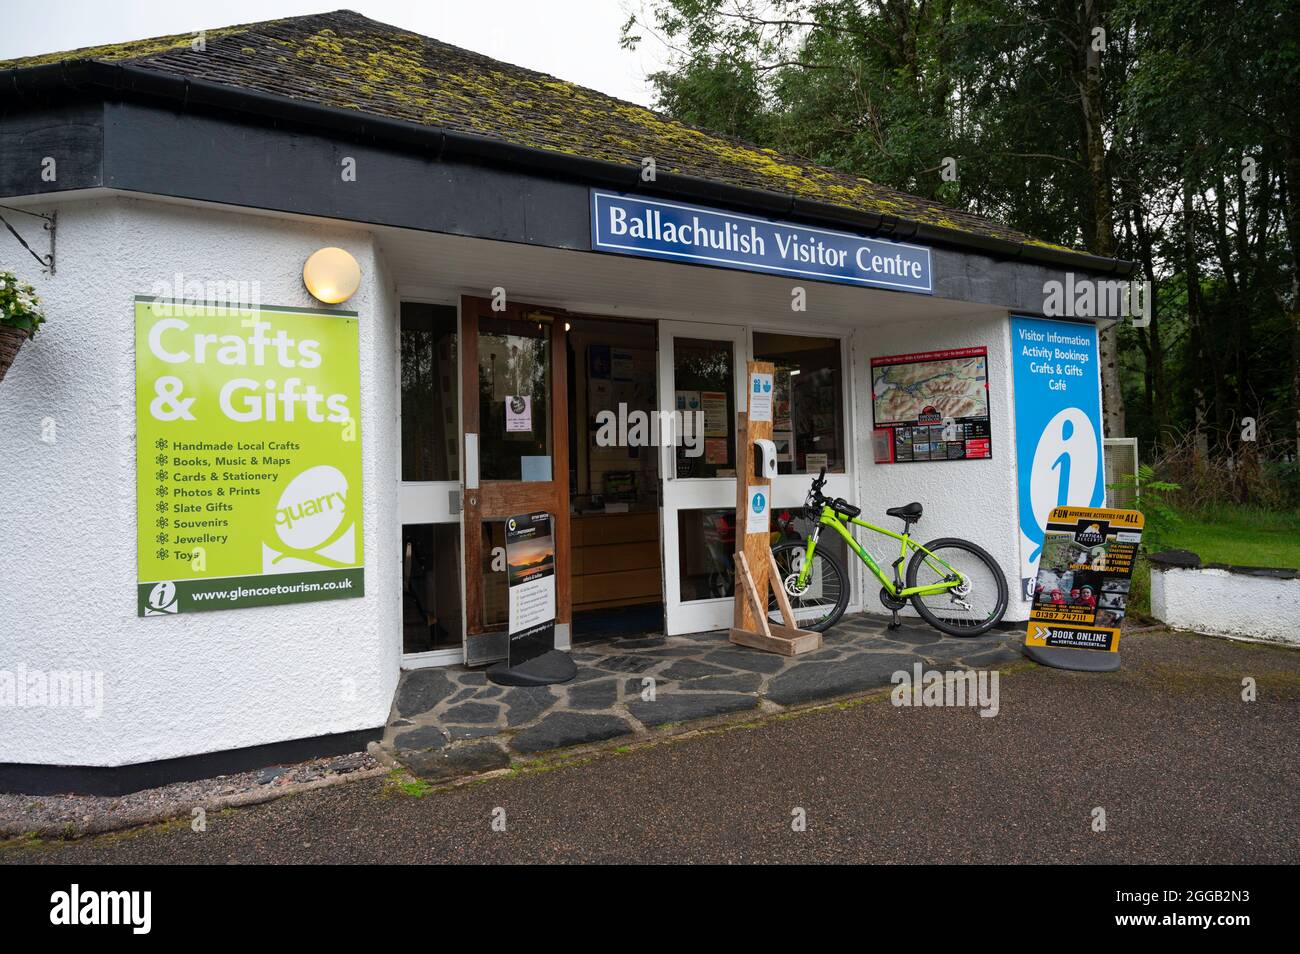 Extérieur du centre d'accueil de Ballachulish avec des panneaux indiquant les informations sur les visiteurs, le café, la boutique de cadeaux et les activités. Vélo laissé à l'extérieur, personne. Banque D'Images